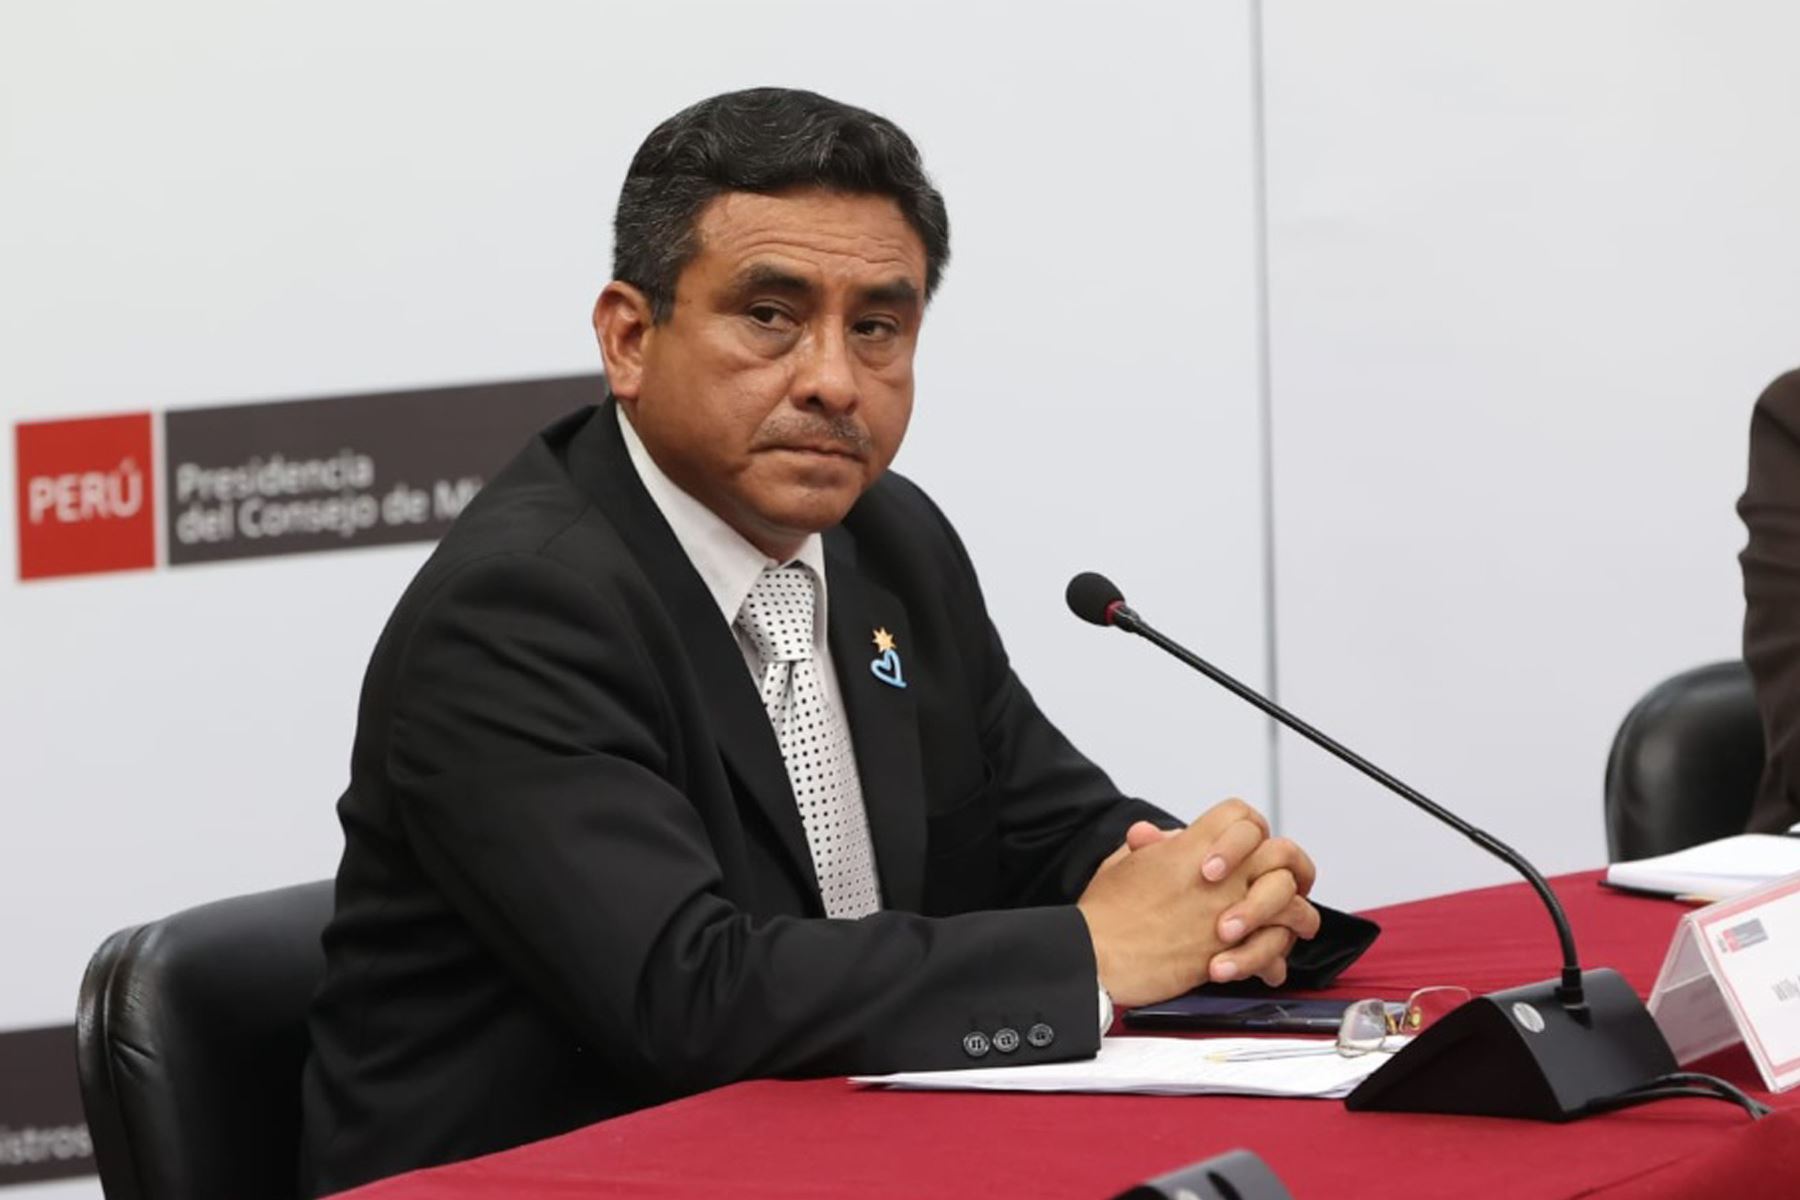 Ministro del Interior, Willy Huerta, en representación del Poder Ejecutivo, brinda una conferencia de prensa, para informar sobre aspectos de interés nacional.
Foto: PCM